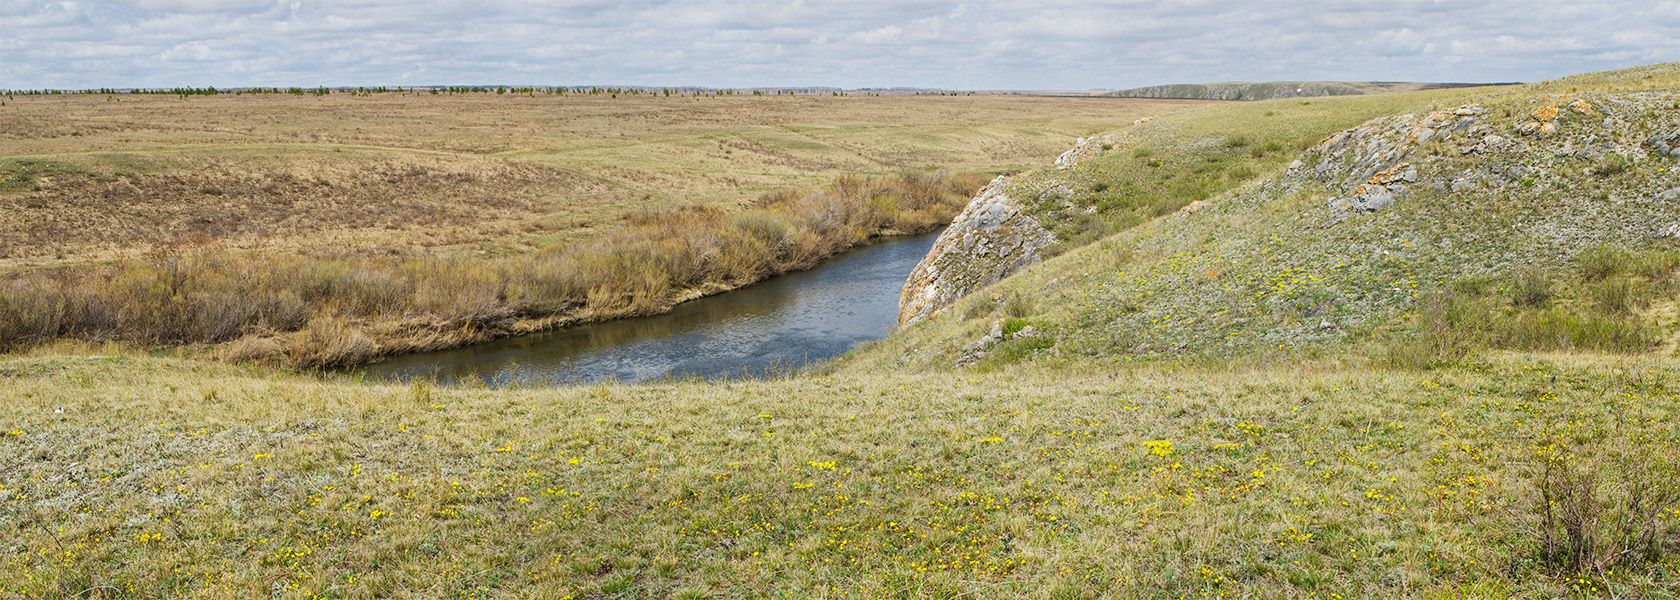 Окрестности Белоключевки, изображение ландшафта.